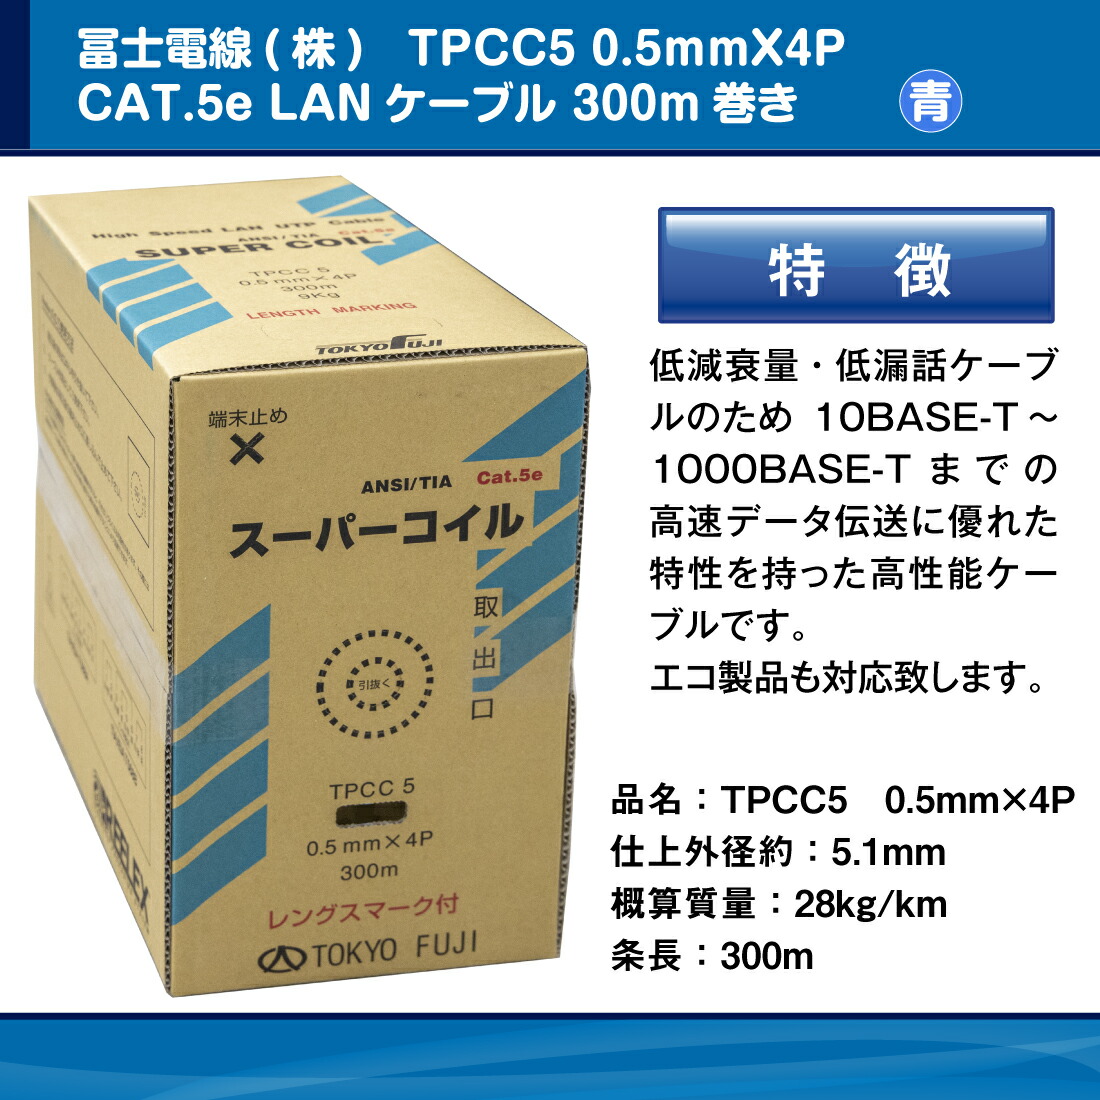 冨士電線 TPCC5 0.5mm×4P レングスマーク付 スーパーコイル 青/ブルー